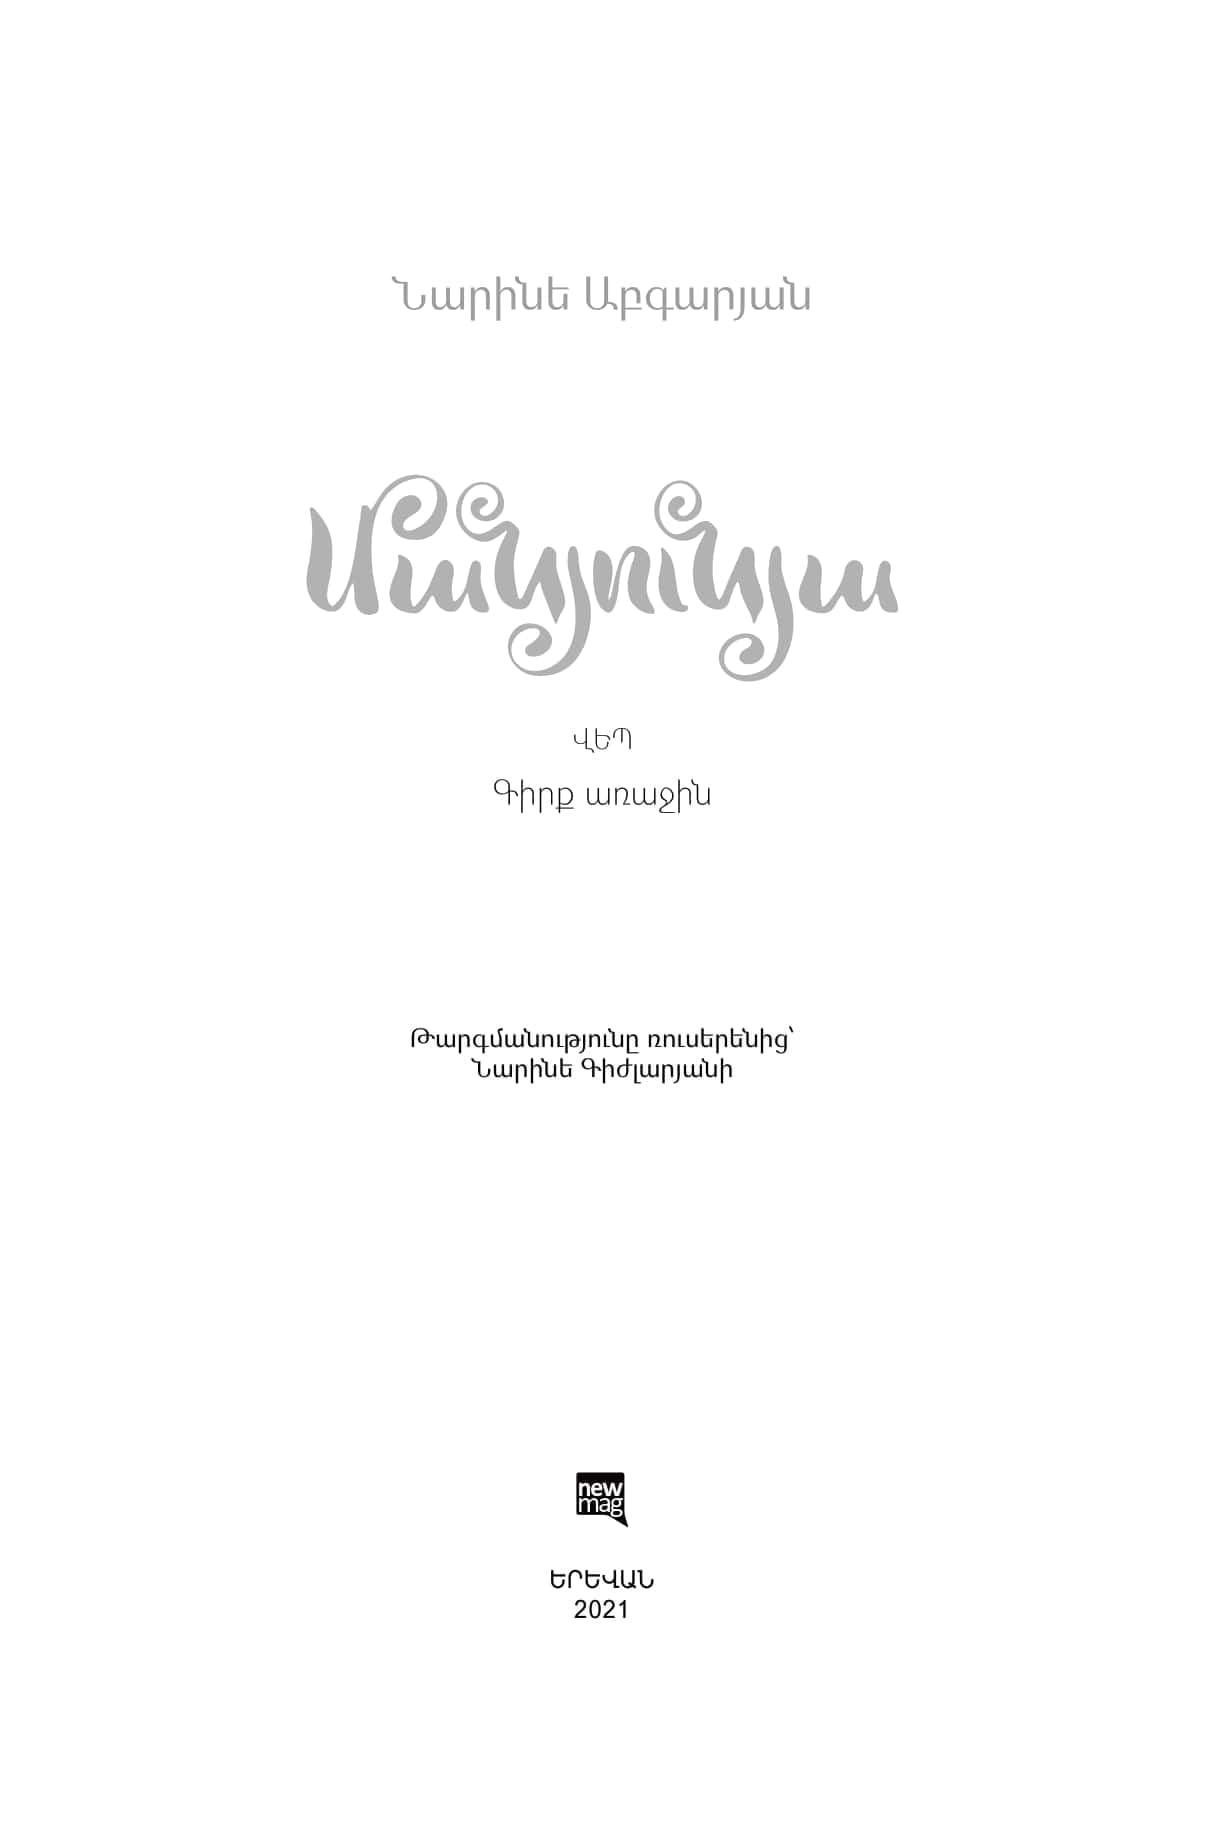 Narine Abgaryan - Manyunya